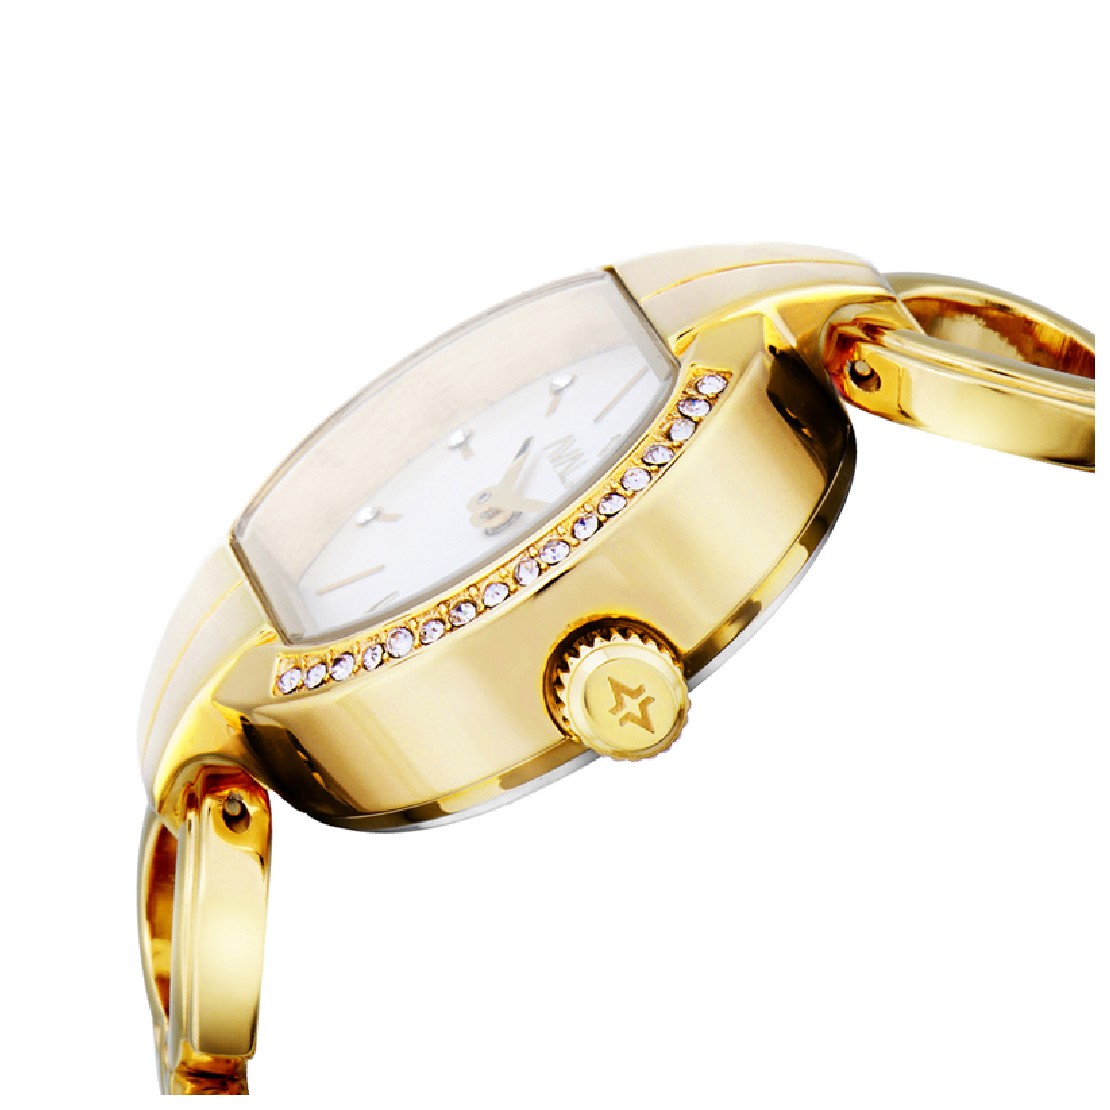 Avalieri Women's Quartz White Dial Watch - AV-2269B